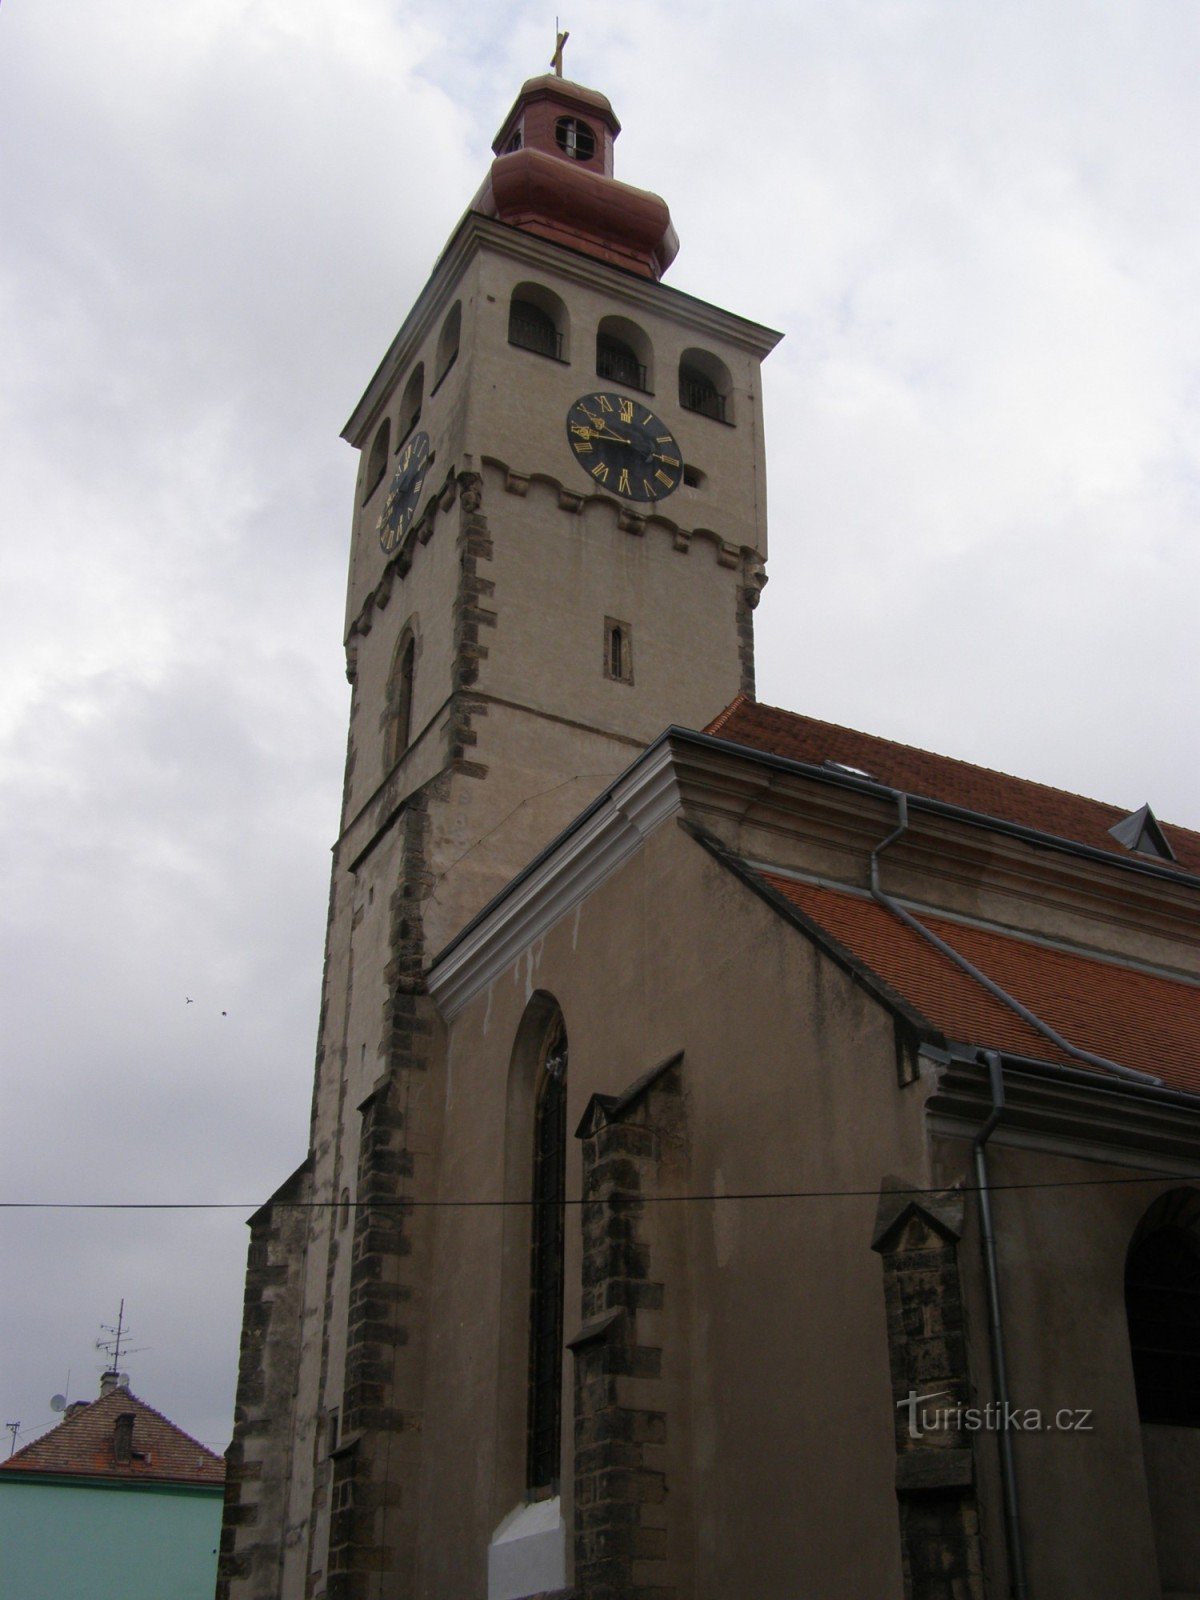 Nový Bydžov - crkva sv. Lovre